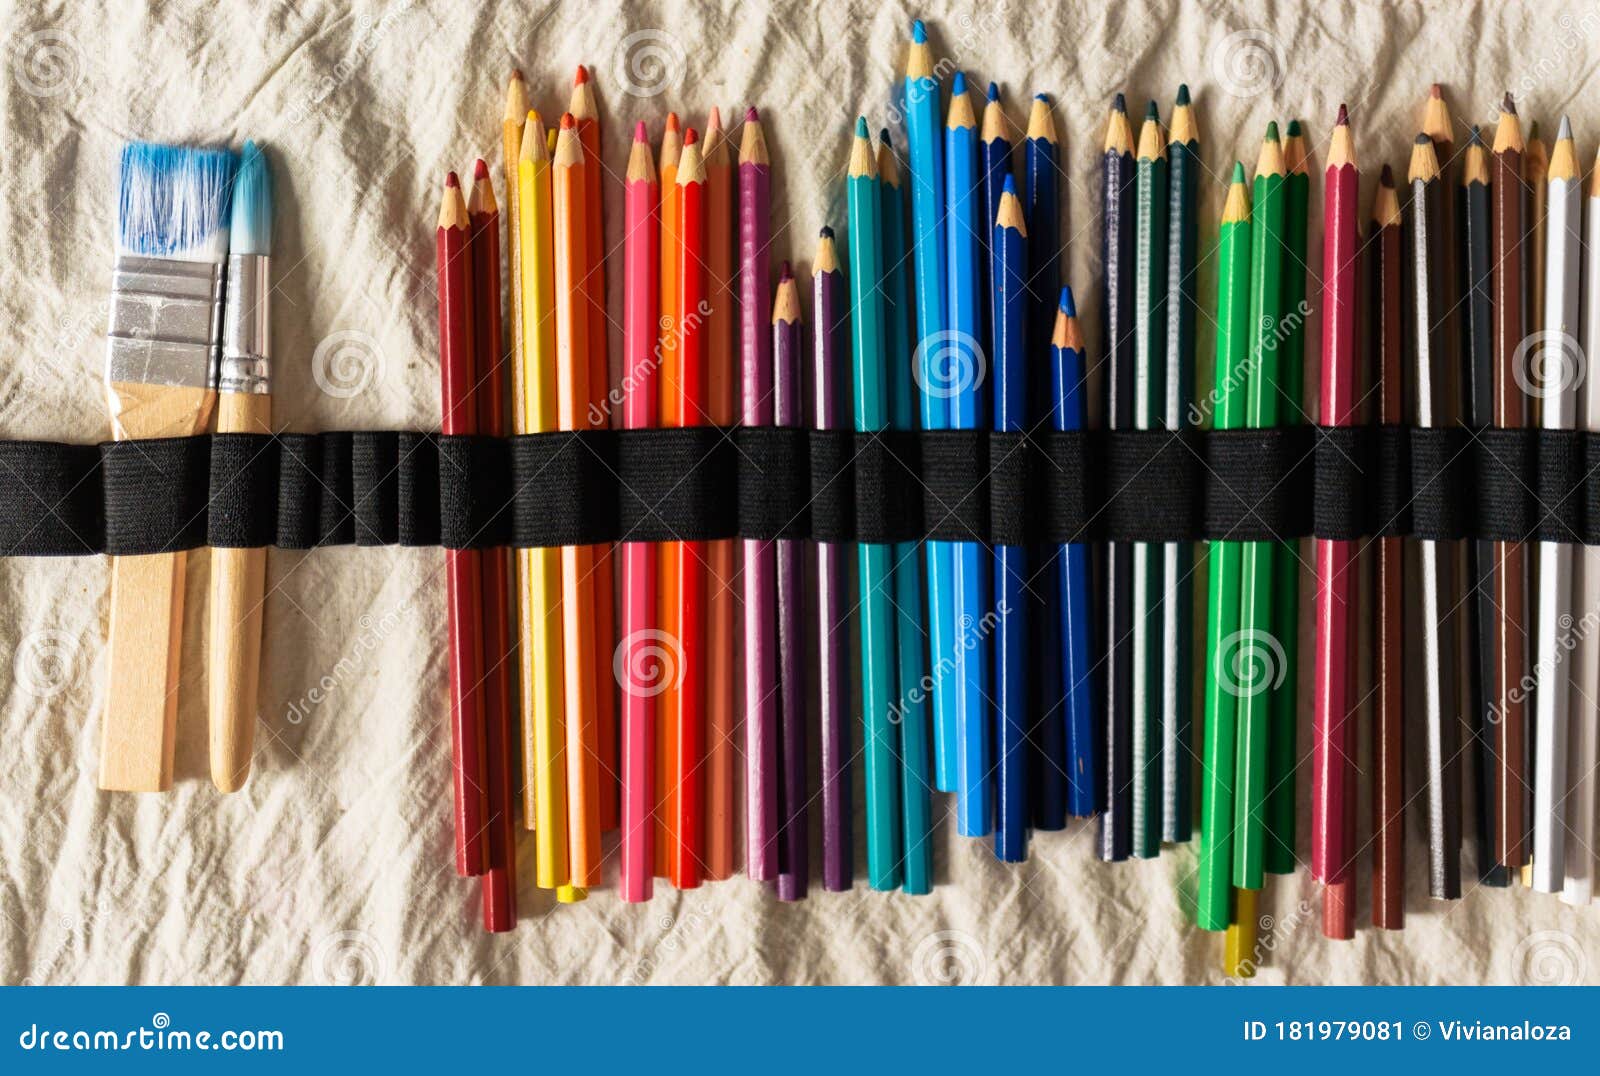 Estuche Lleno De Lápices De Colores archivo - Imagen de fondo: 181979081